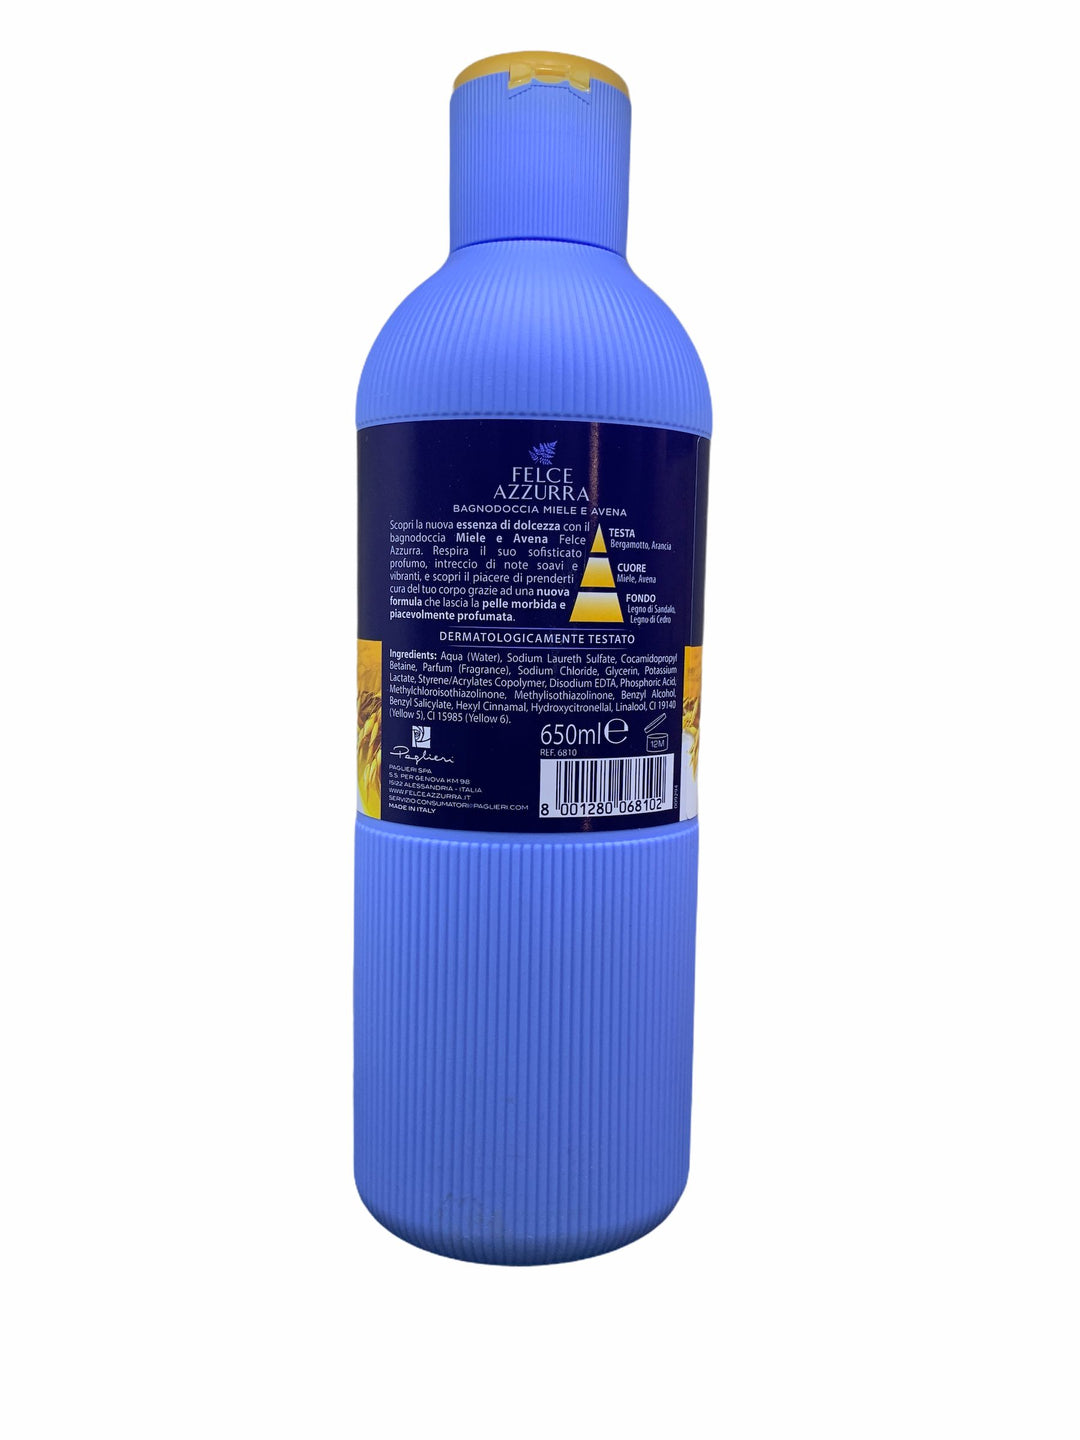 Felce azzurra bagno doccia miele e avena essenza di dolcezza 650 ml